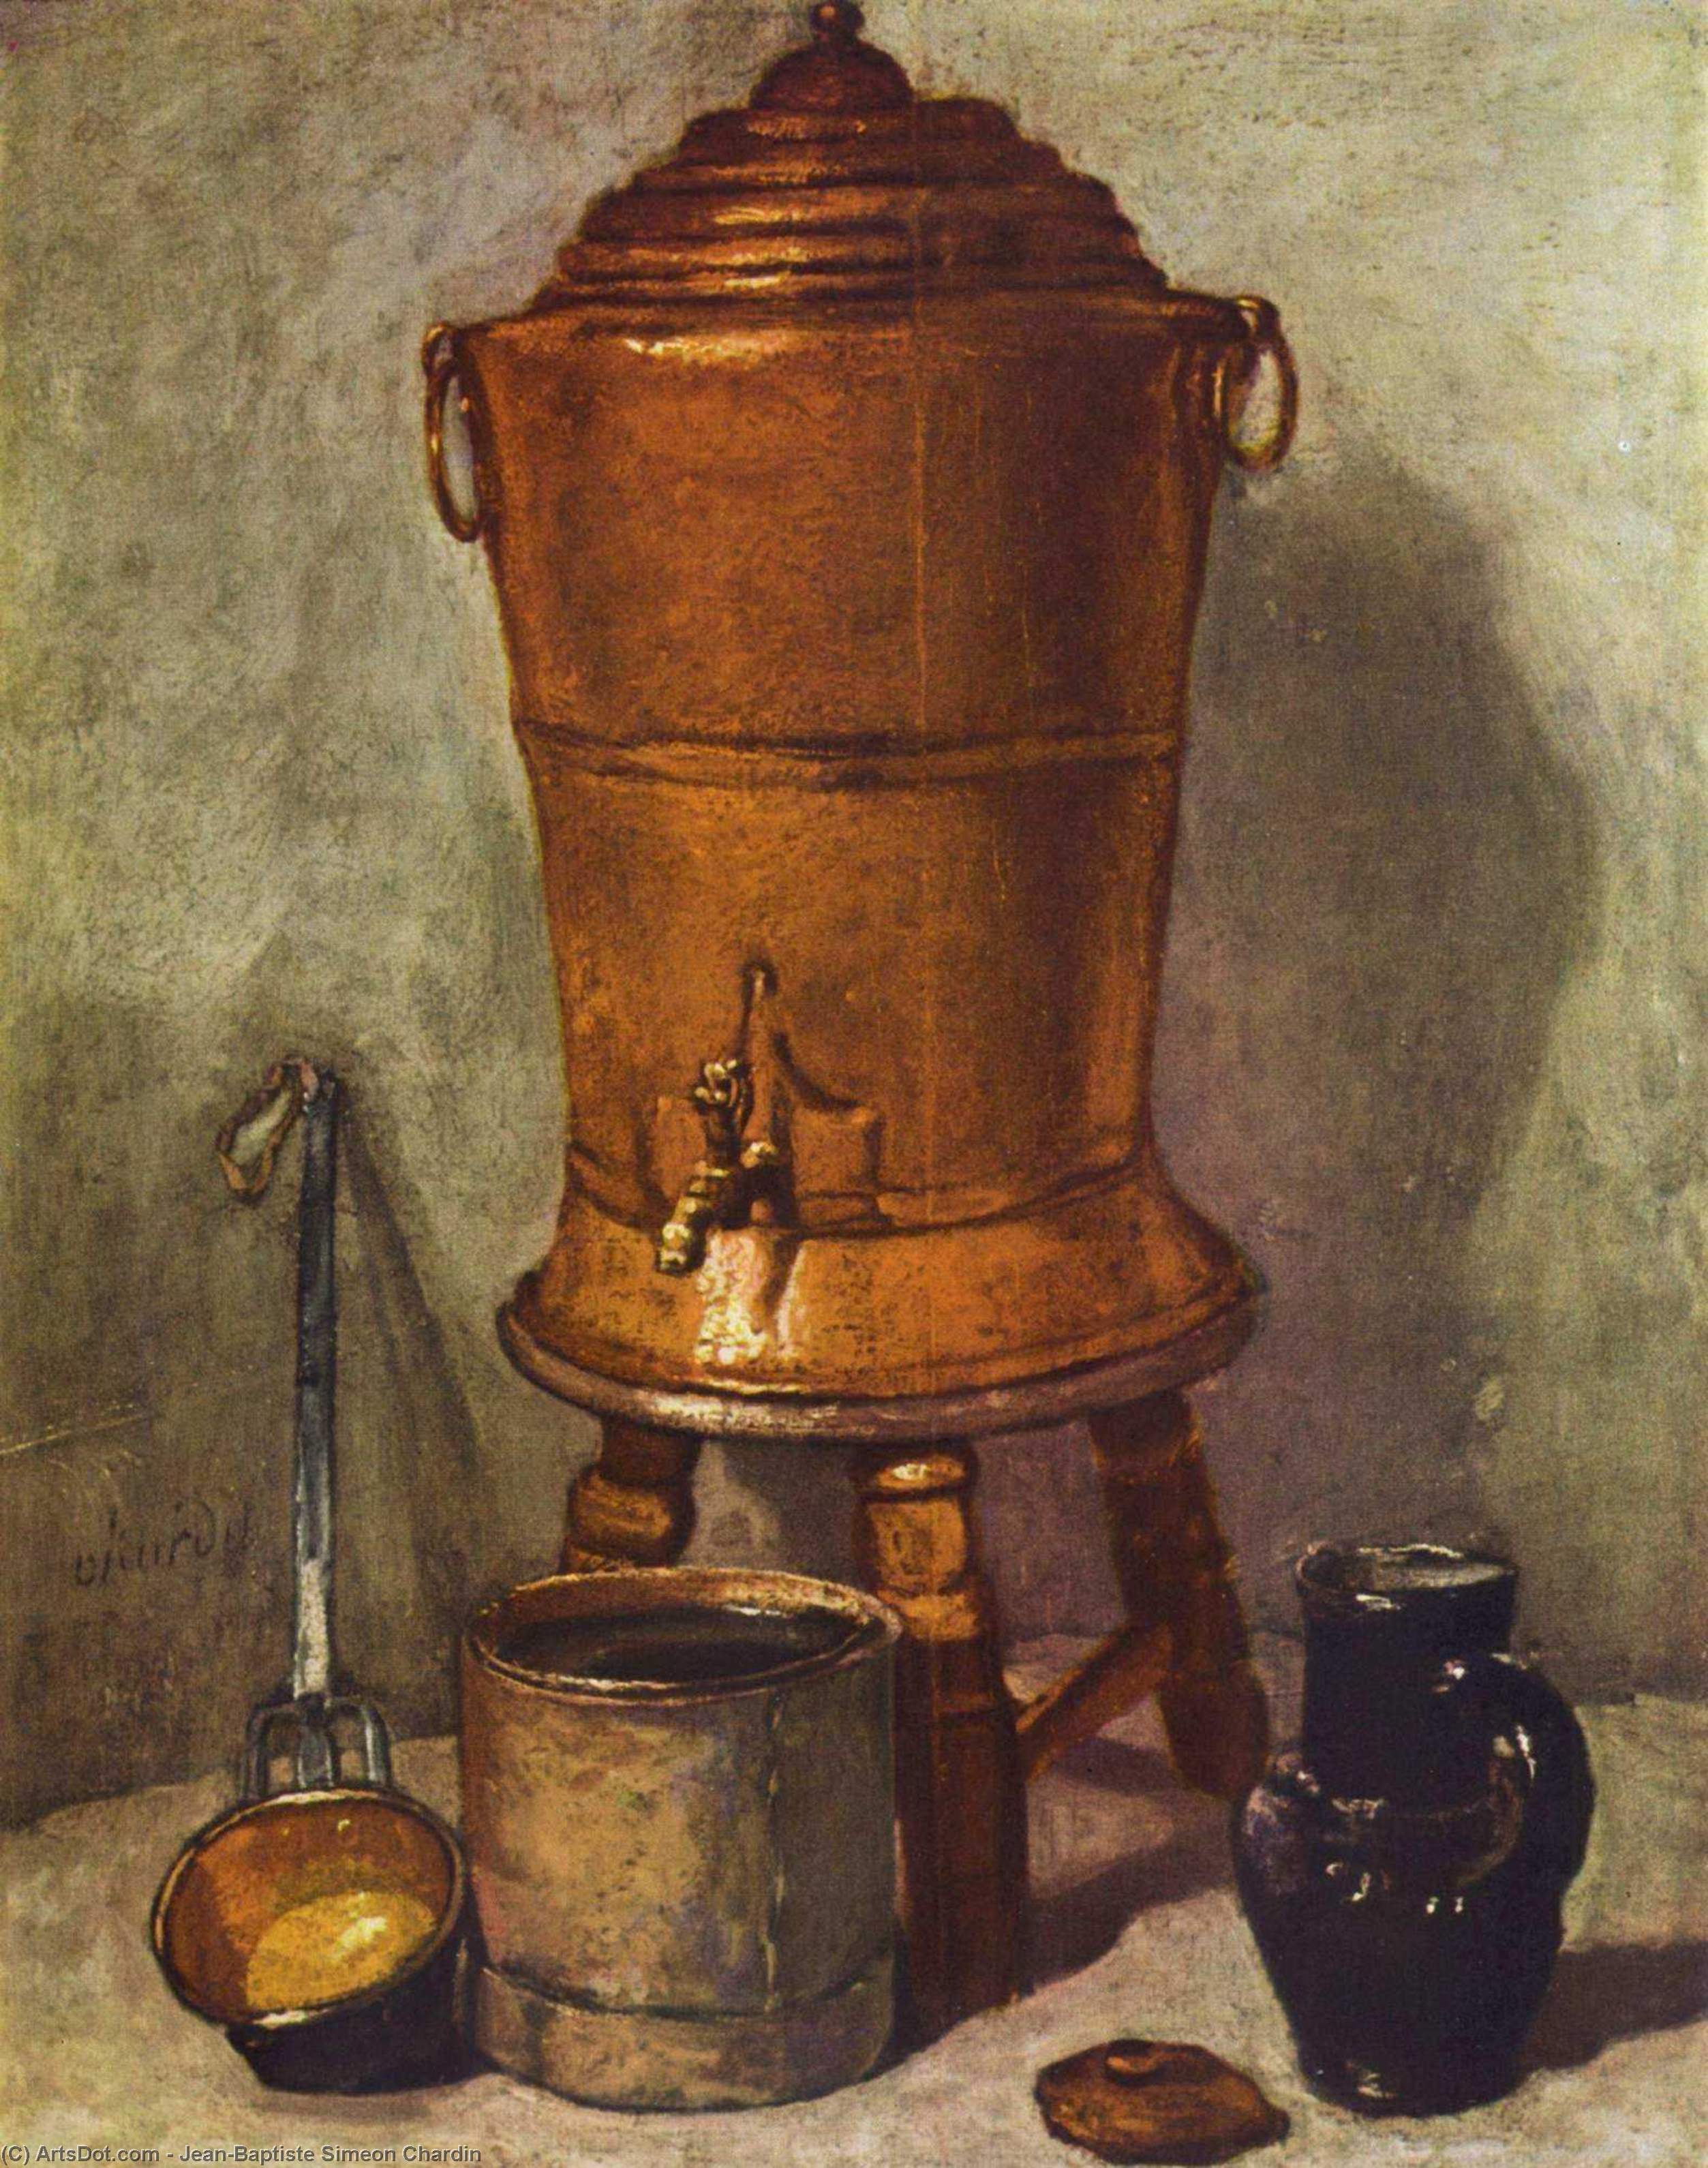 WikiOO.org - Encyclopedia of Fine Arts - Lukisan, Artwork Jean-Baptiste Simeon Chardin - The water tank